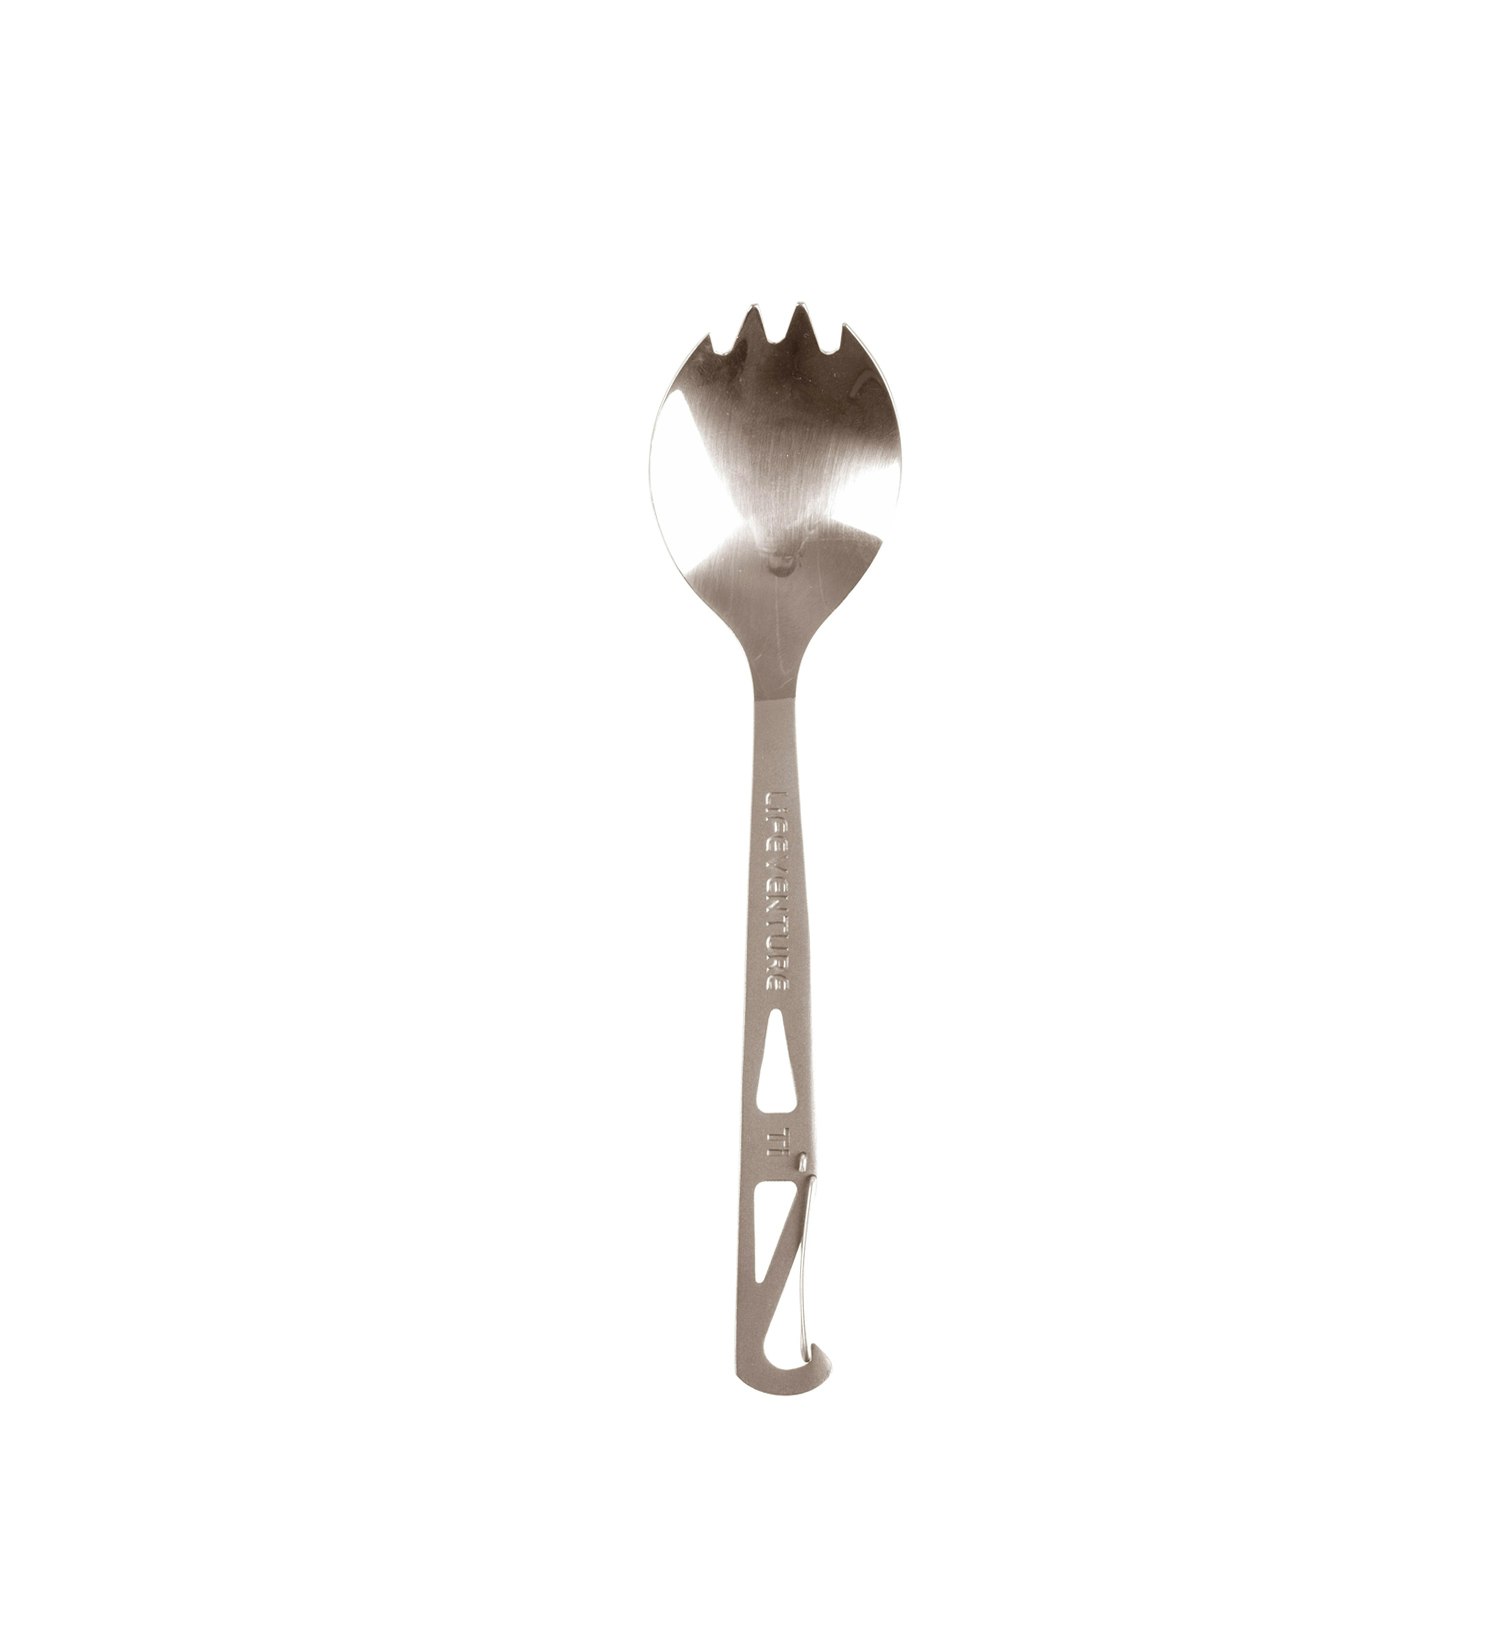 Lifeventure Titanium Fork Spoon